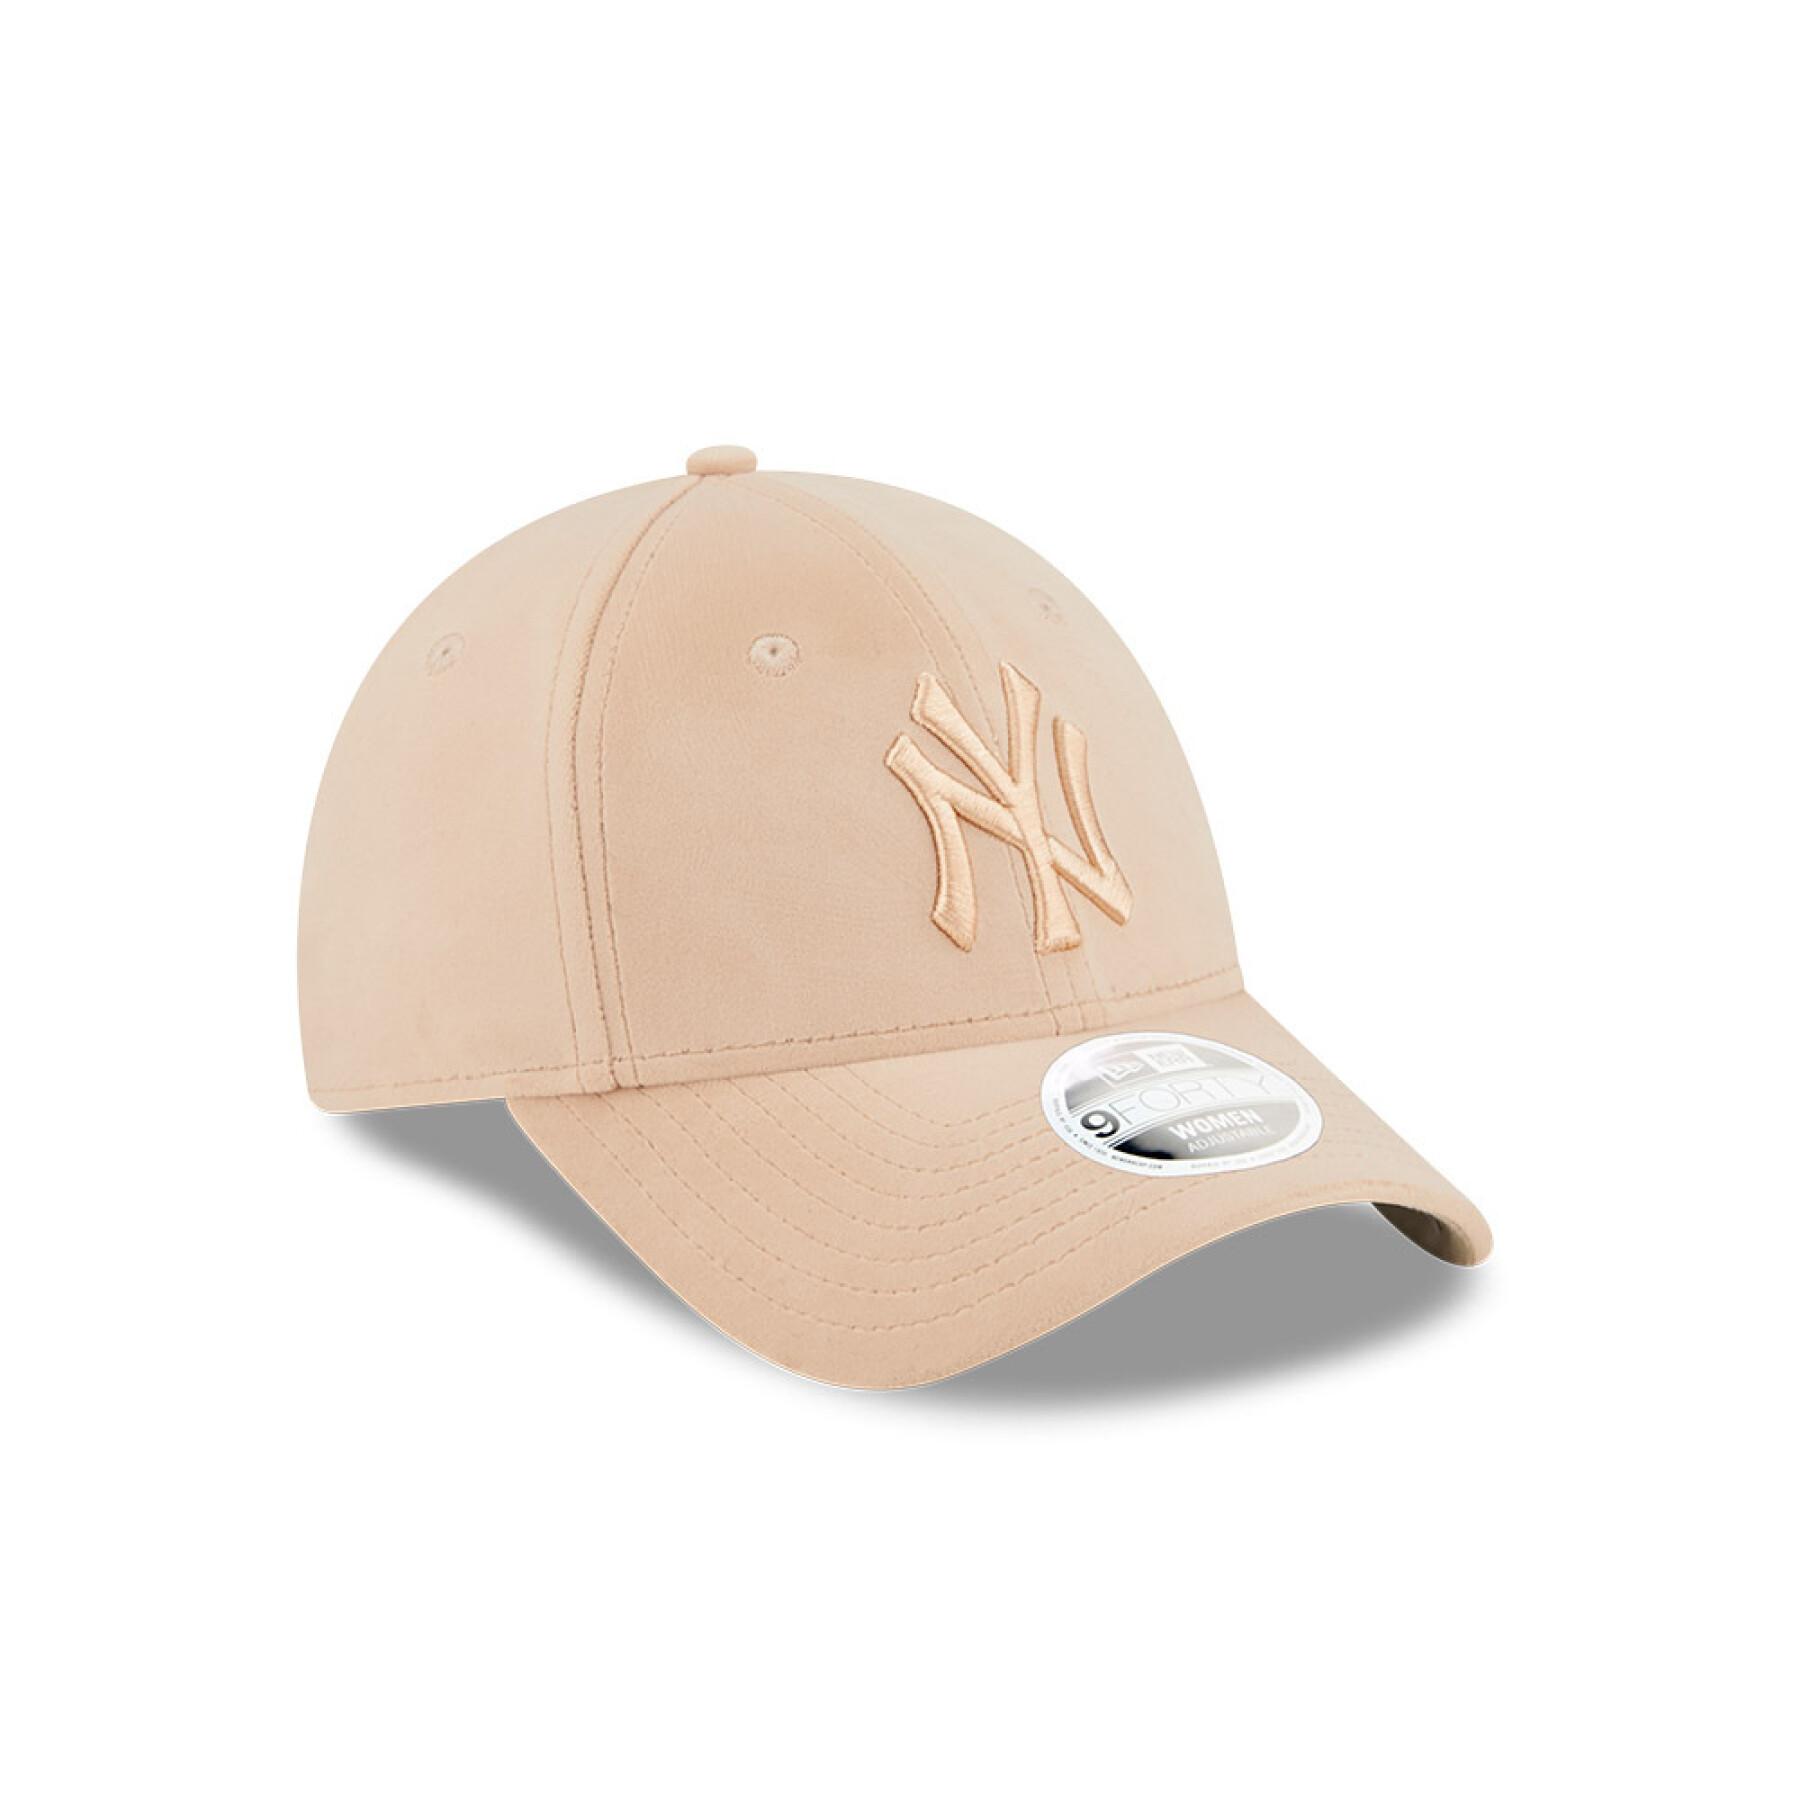 9forty berretto di velluto da donna New York Yankees